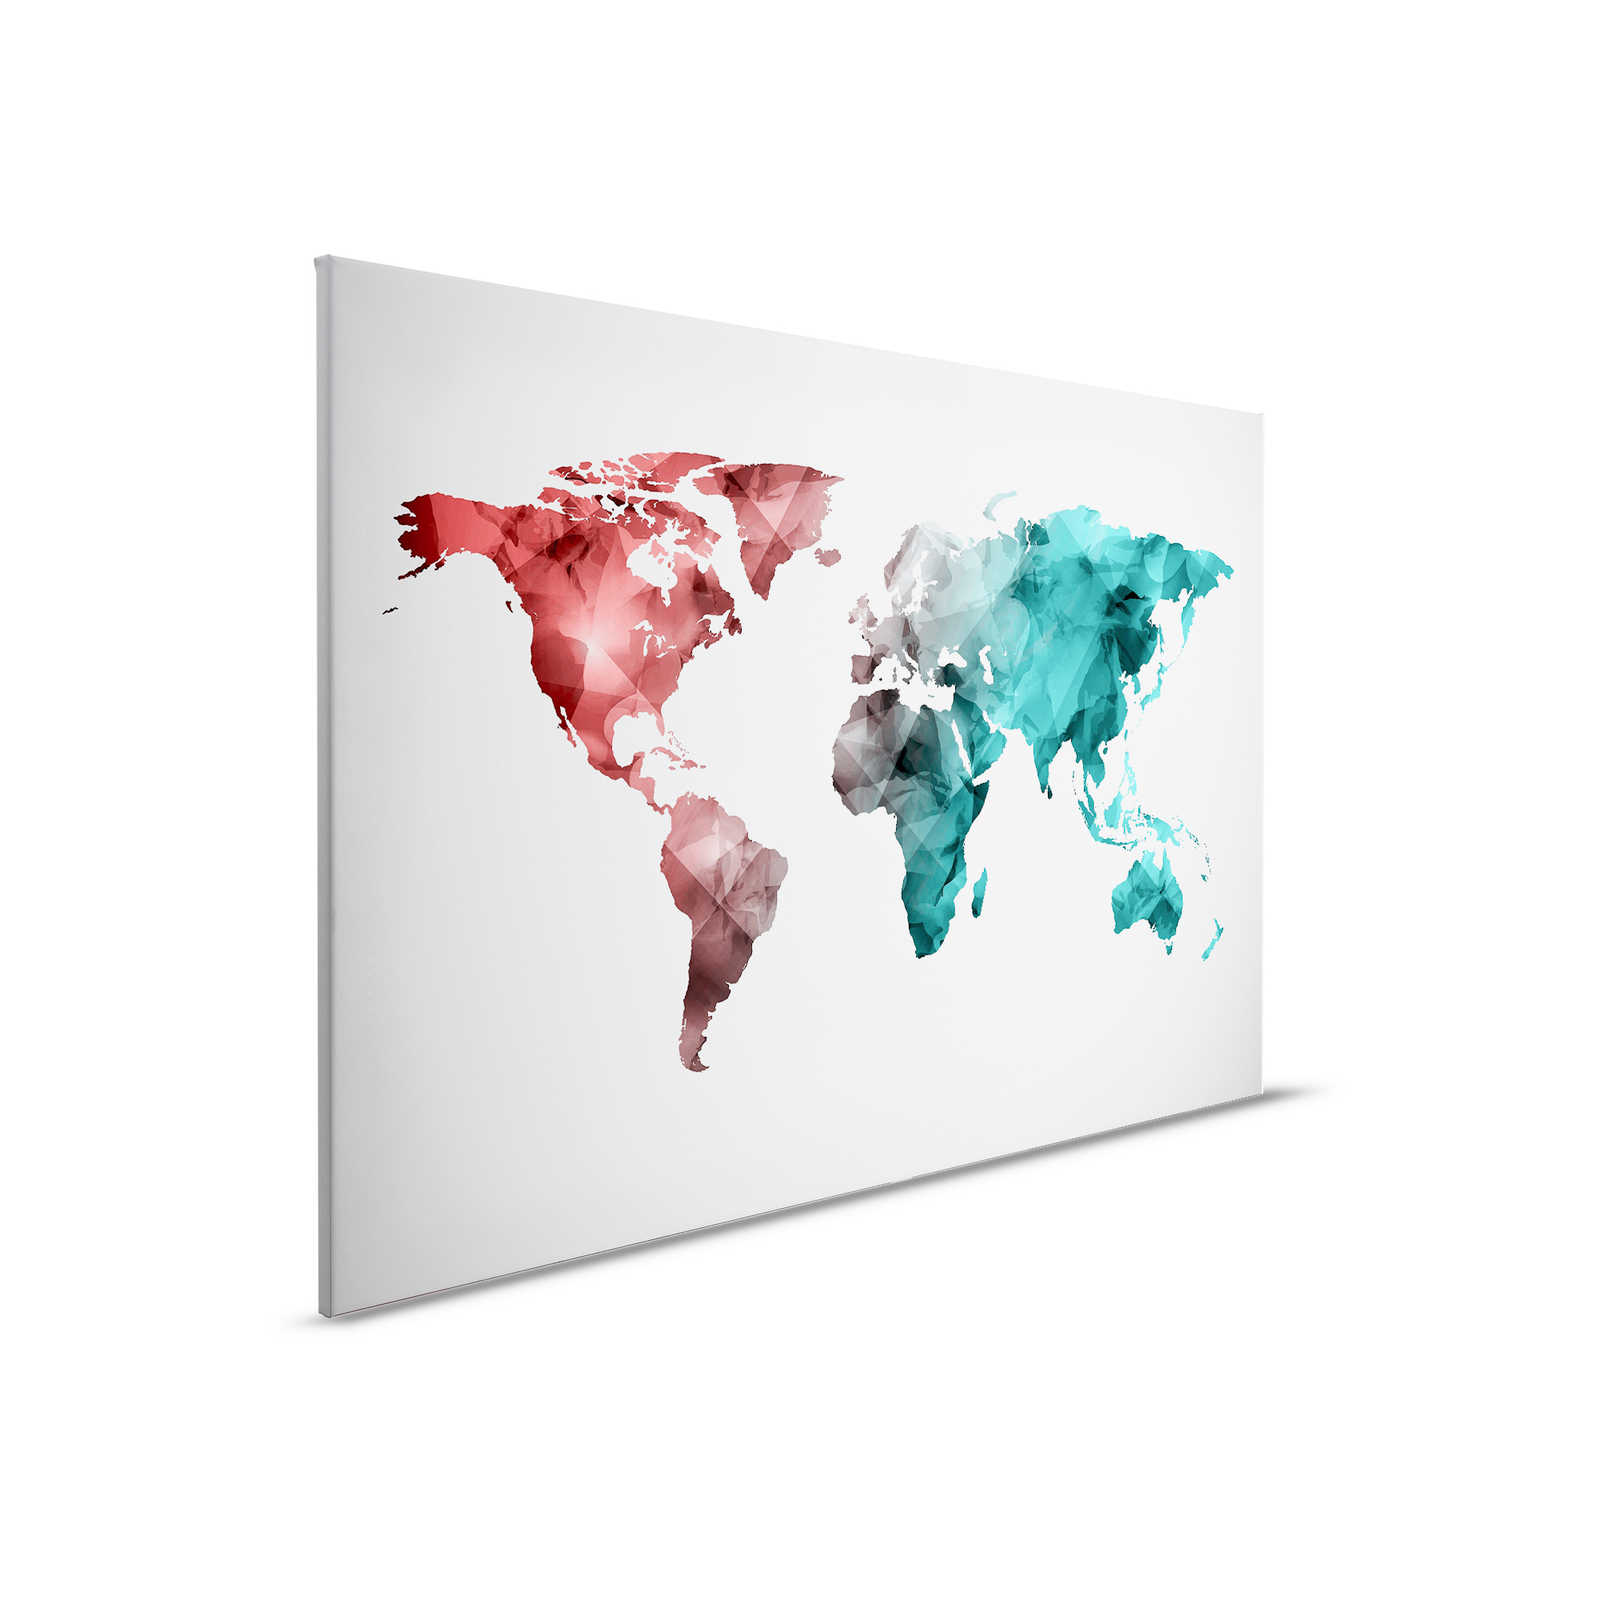 Tela con mappa del mondo realizzata con elementi grafici | WorldGrafic 2 - 0,90 m x 0,60 m
